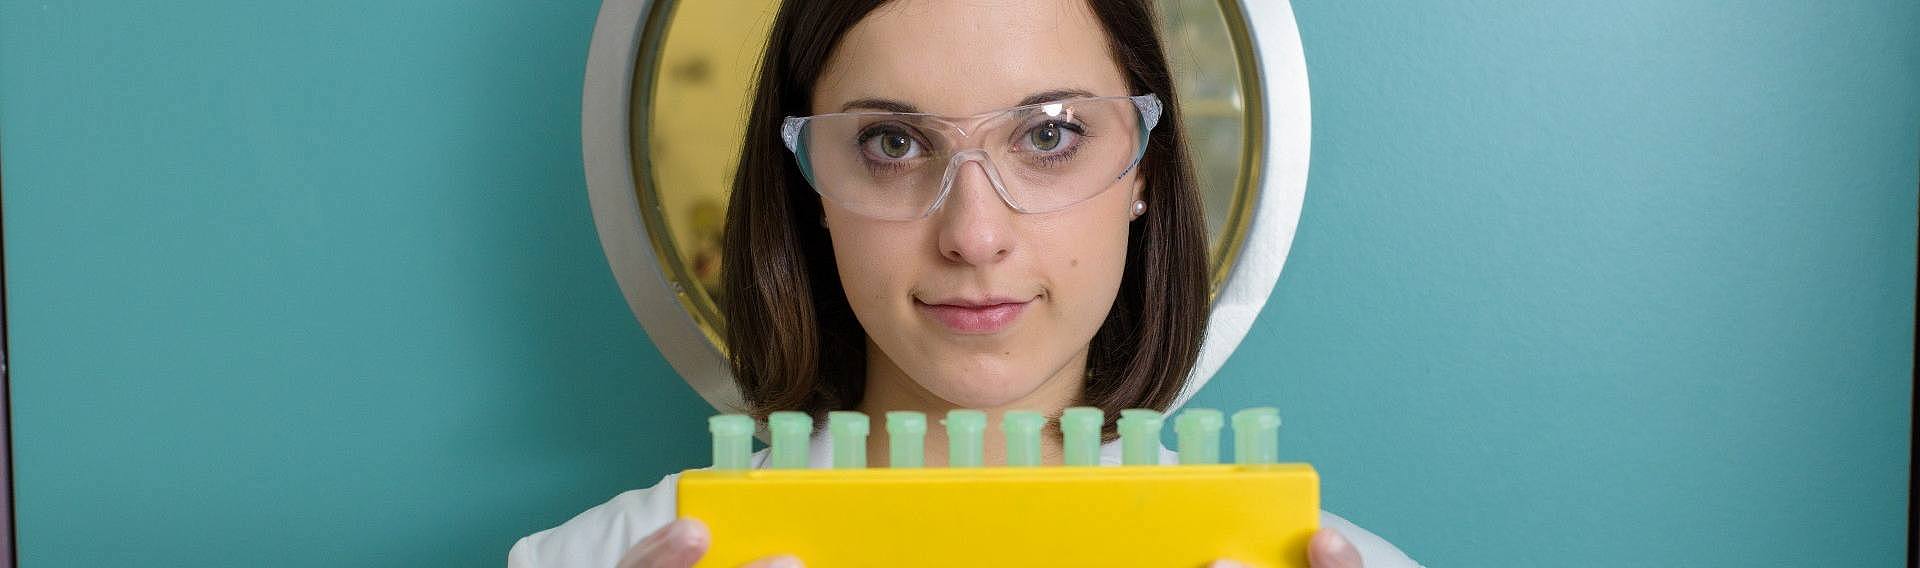 Studentin hält im Labor einen Behälter mit Proben in der Hand